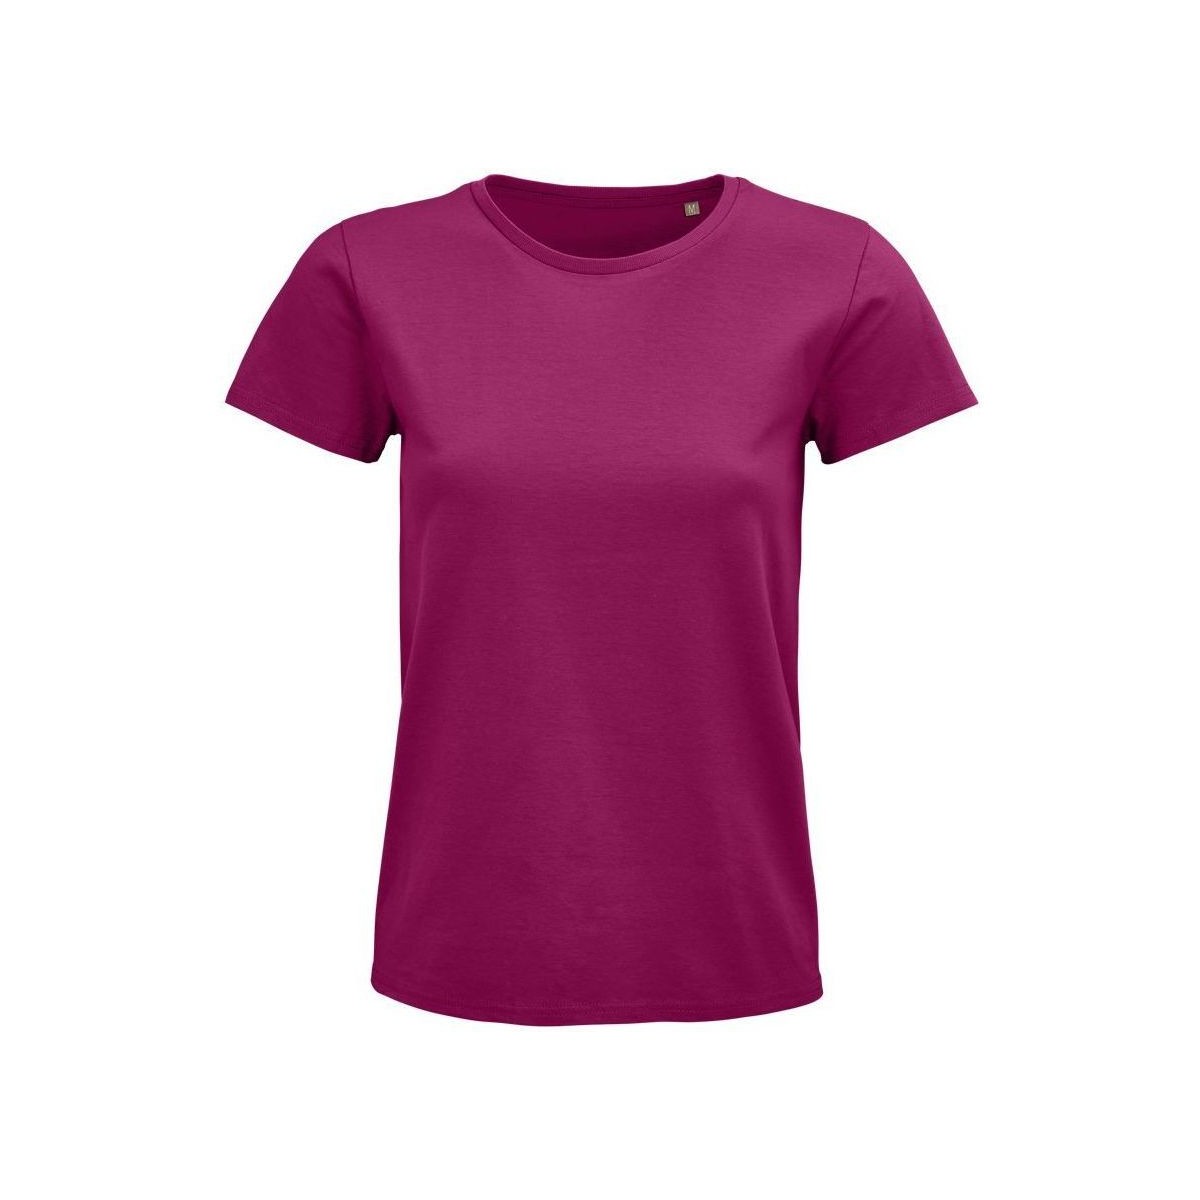 Textil Mulher T-shirts e Pólos Sols PIONNER WOMEN Violeta